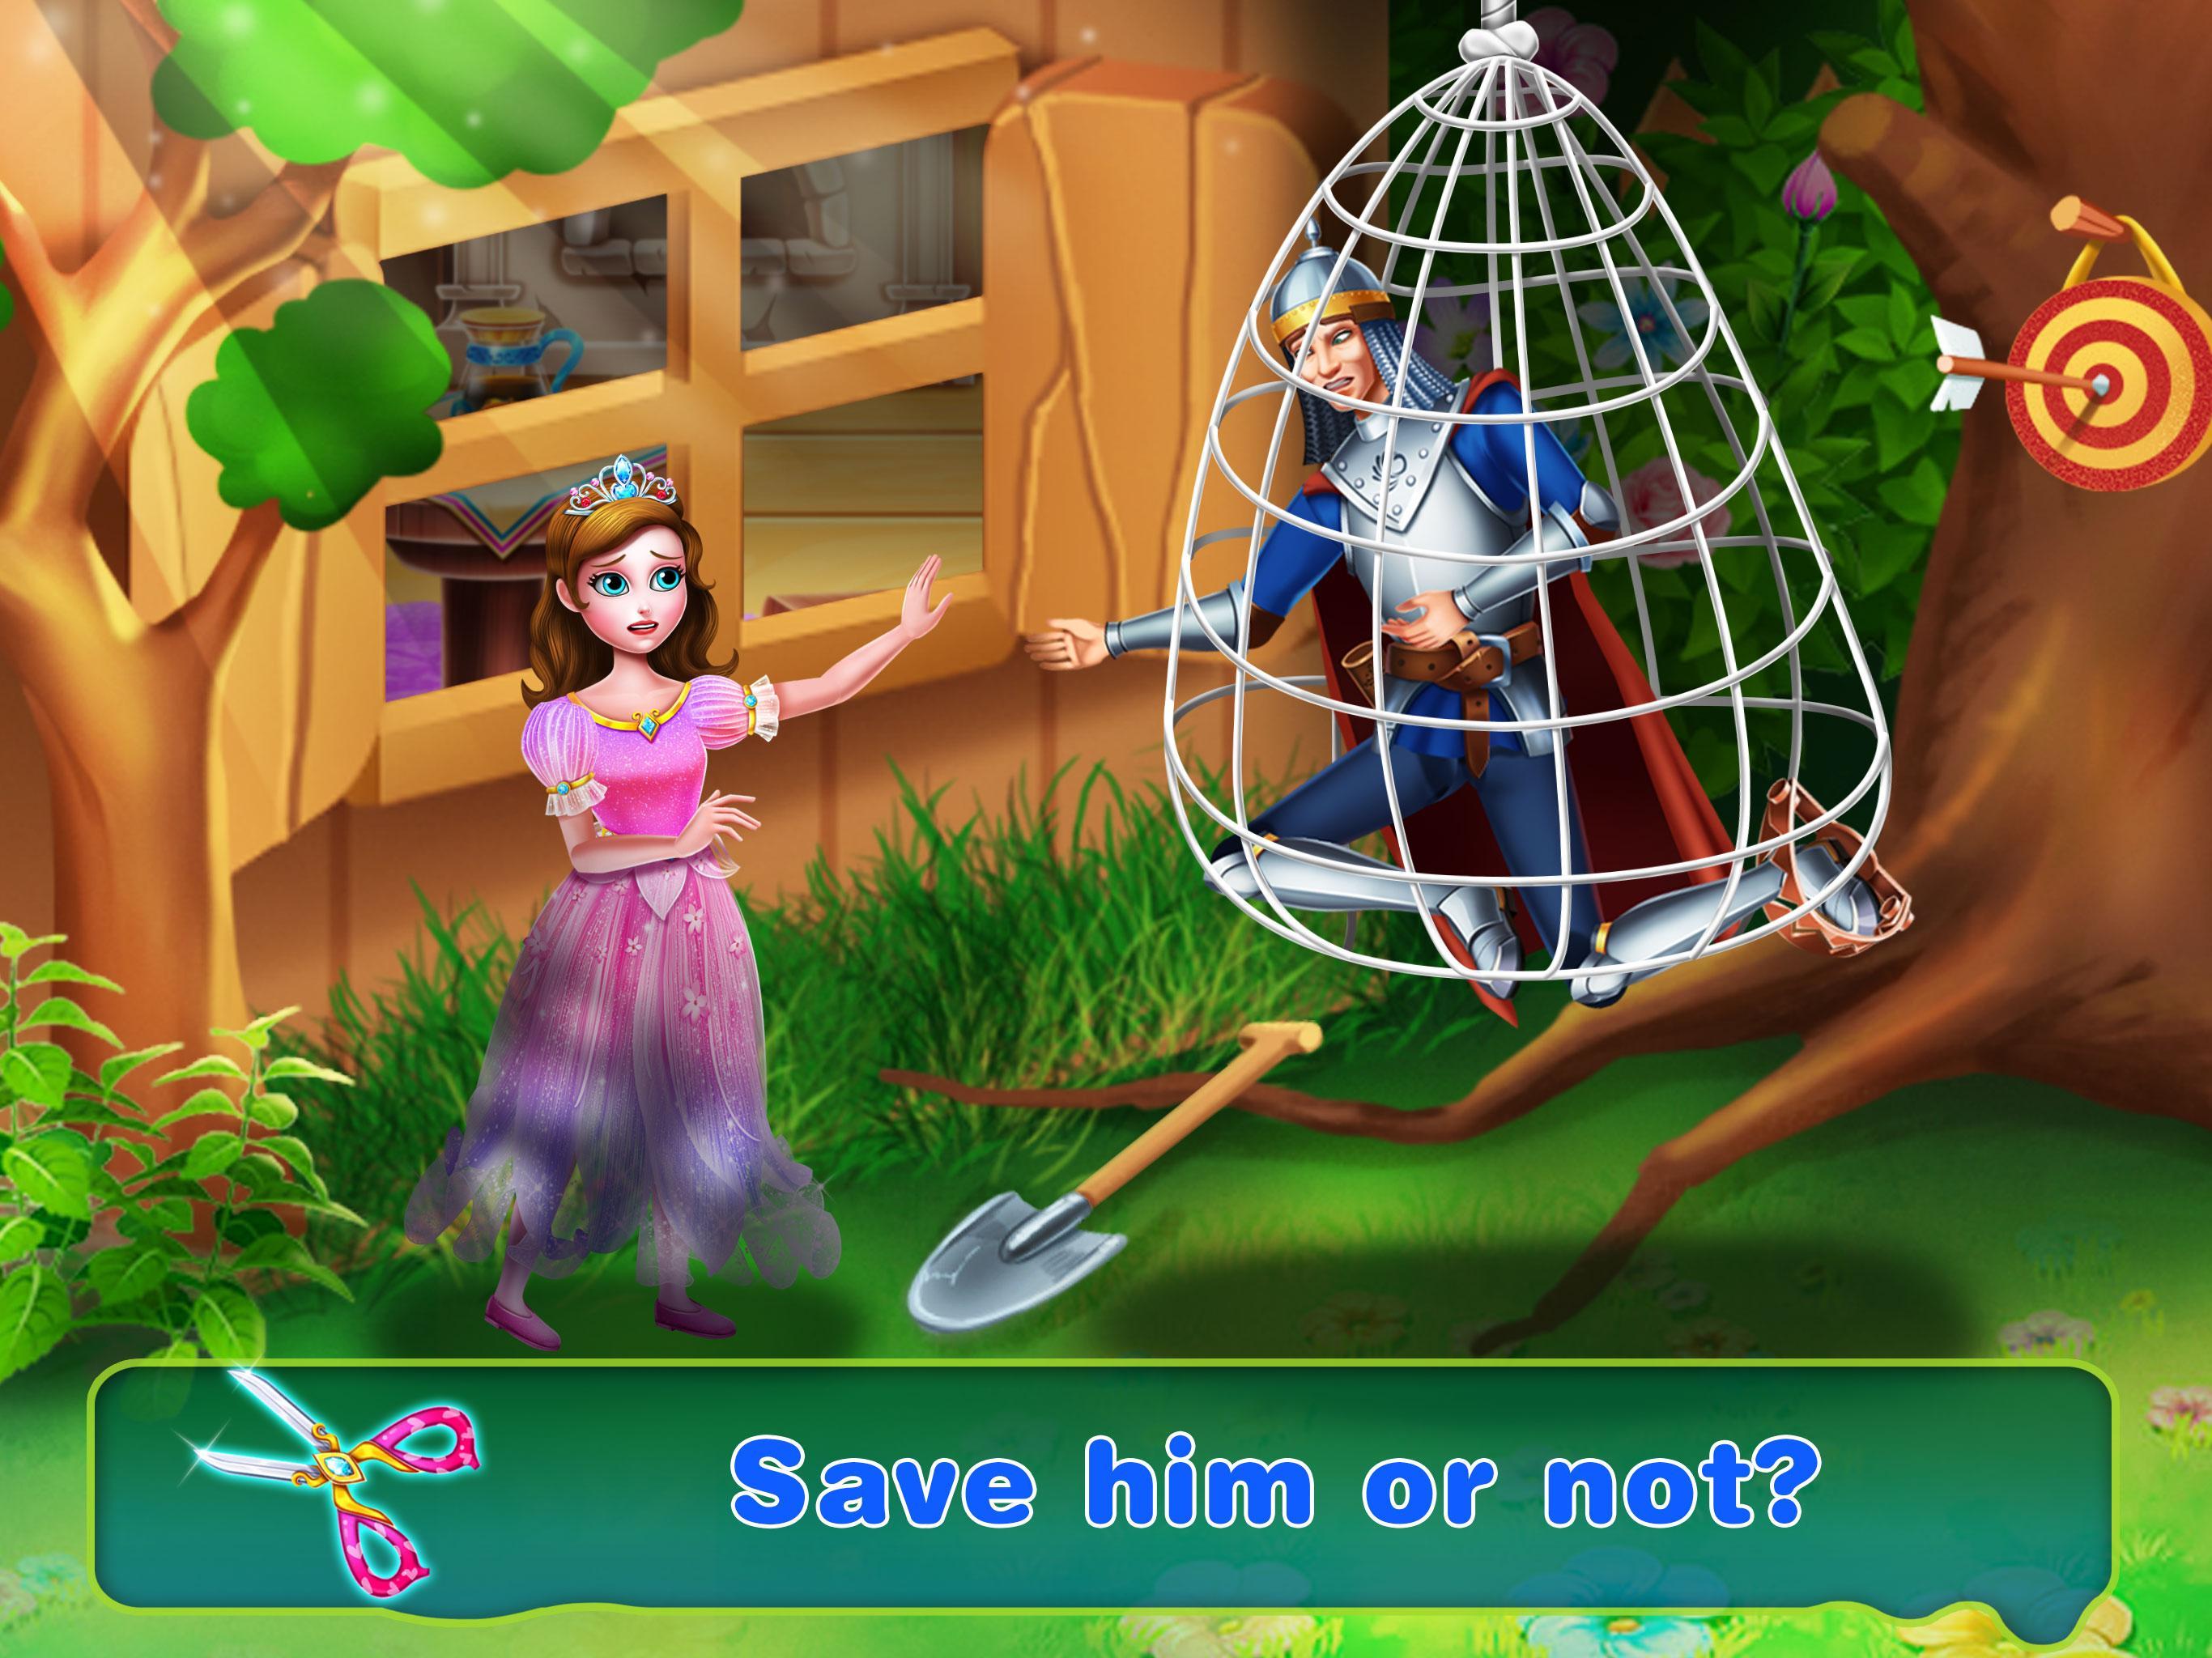 Игра спасти принцессу. Программа спасения принцесс. Дидактическая игра «спасение принцессы». Принц спасает девушку игра на андроид.